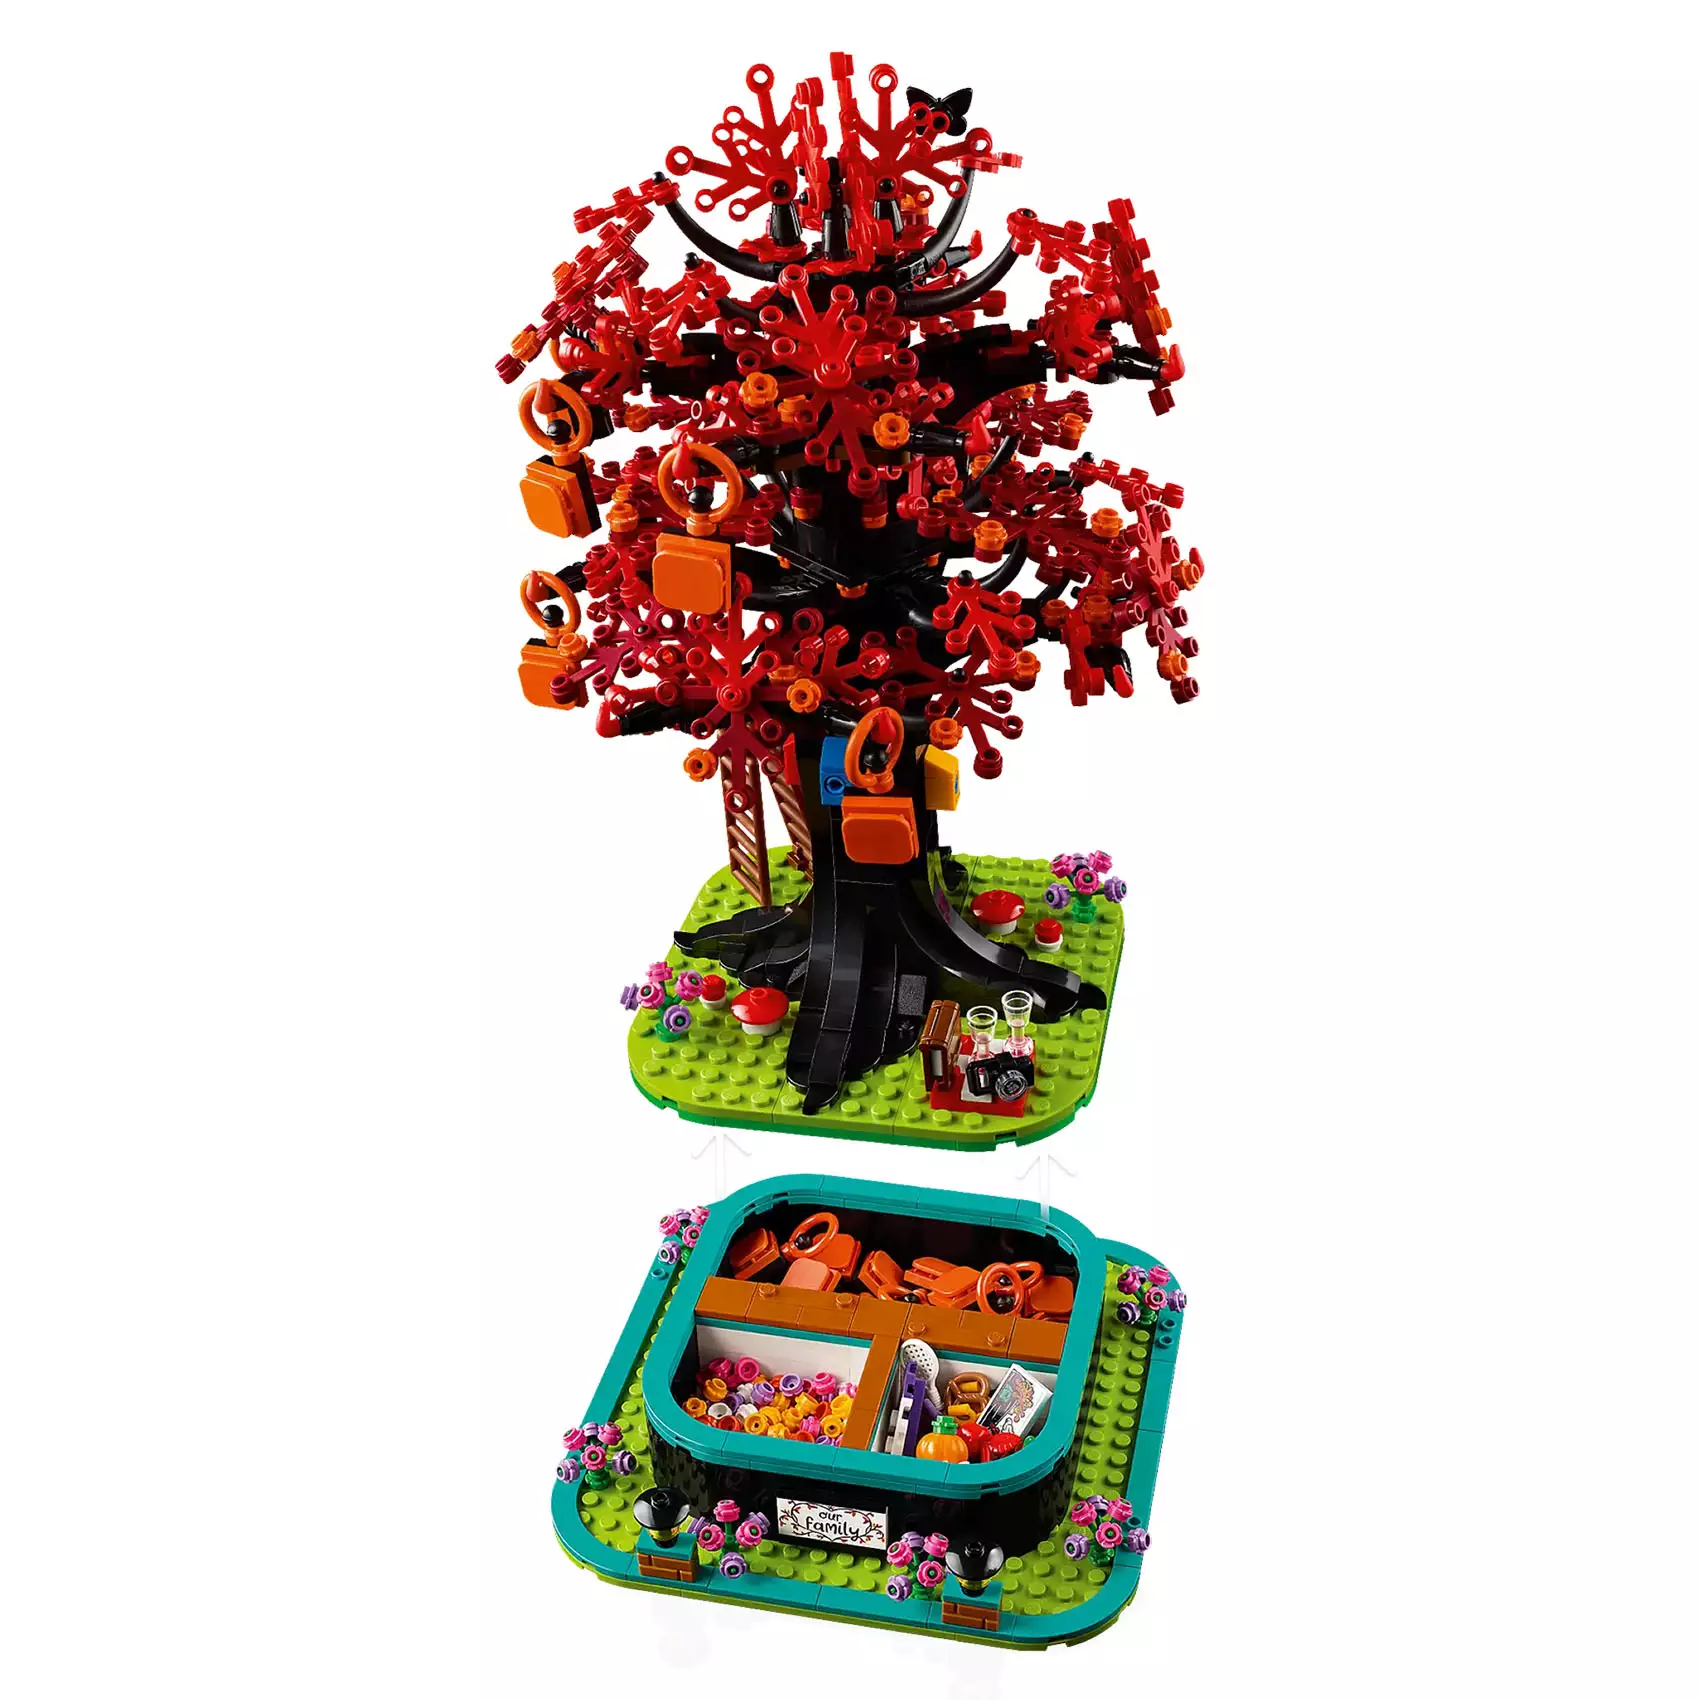 Construisez vos souvenirs avec le pack "Familly Tree" de LEGO Ideas